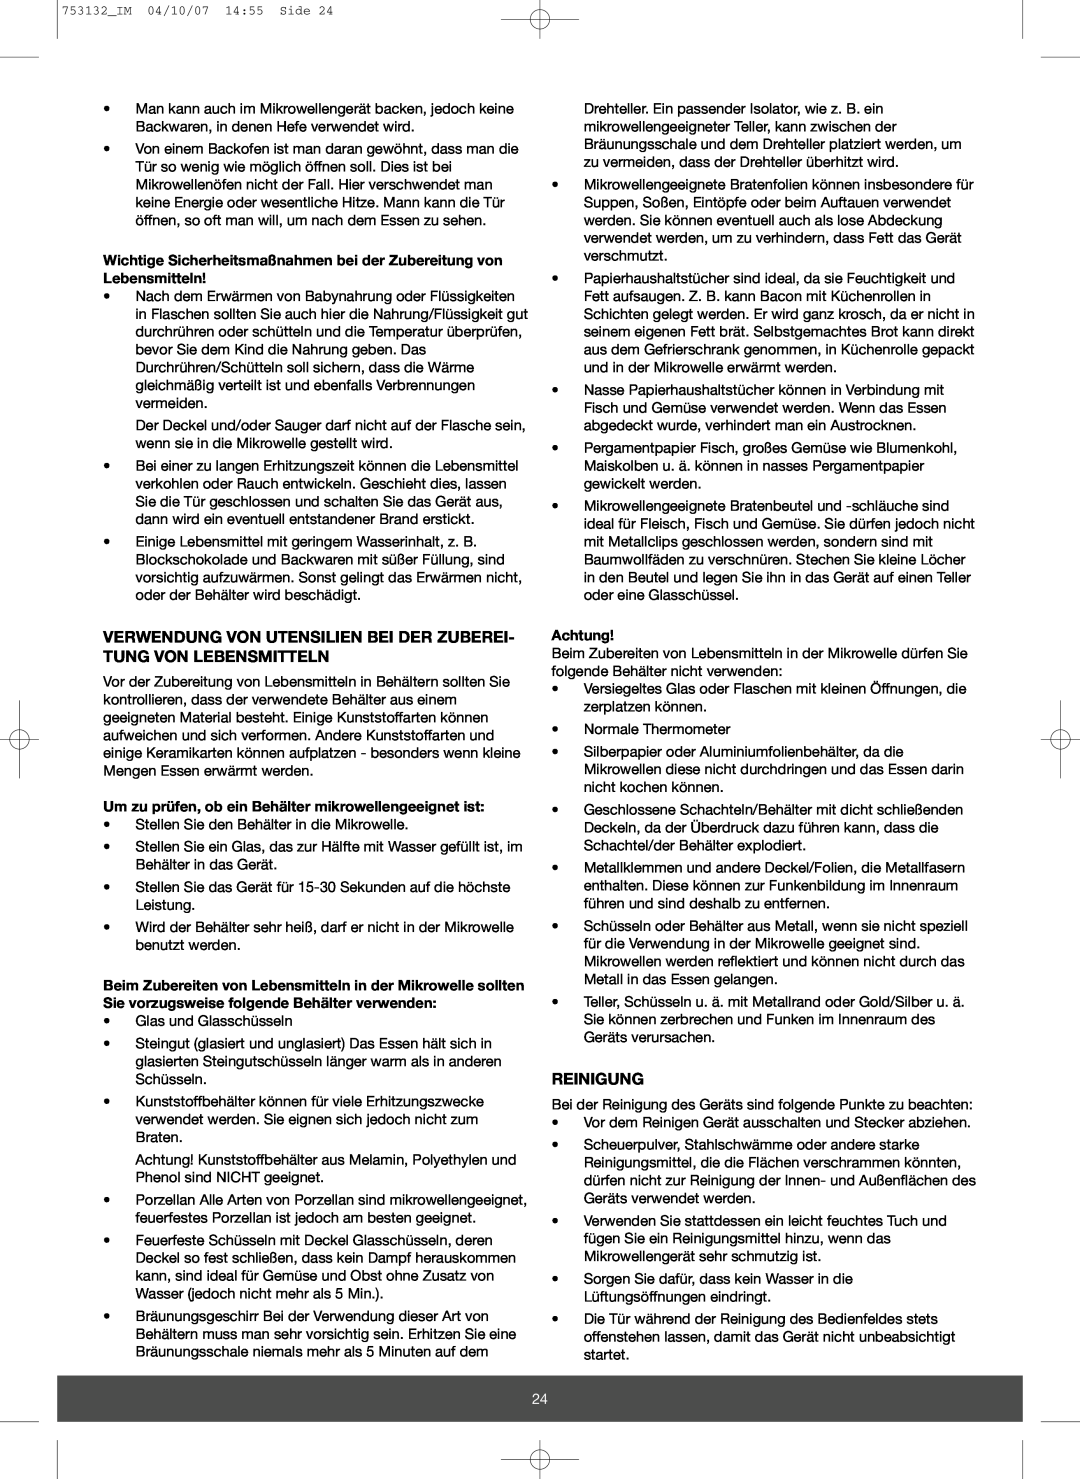 Melissa 753-132 manual Verwendung Von Utensilien Bei Der Zuberei- Tung Von Lebensmitteln, Reinigung, Achtung 